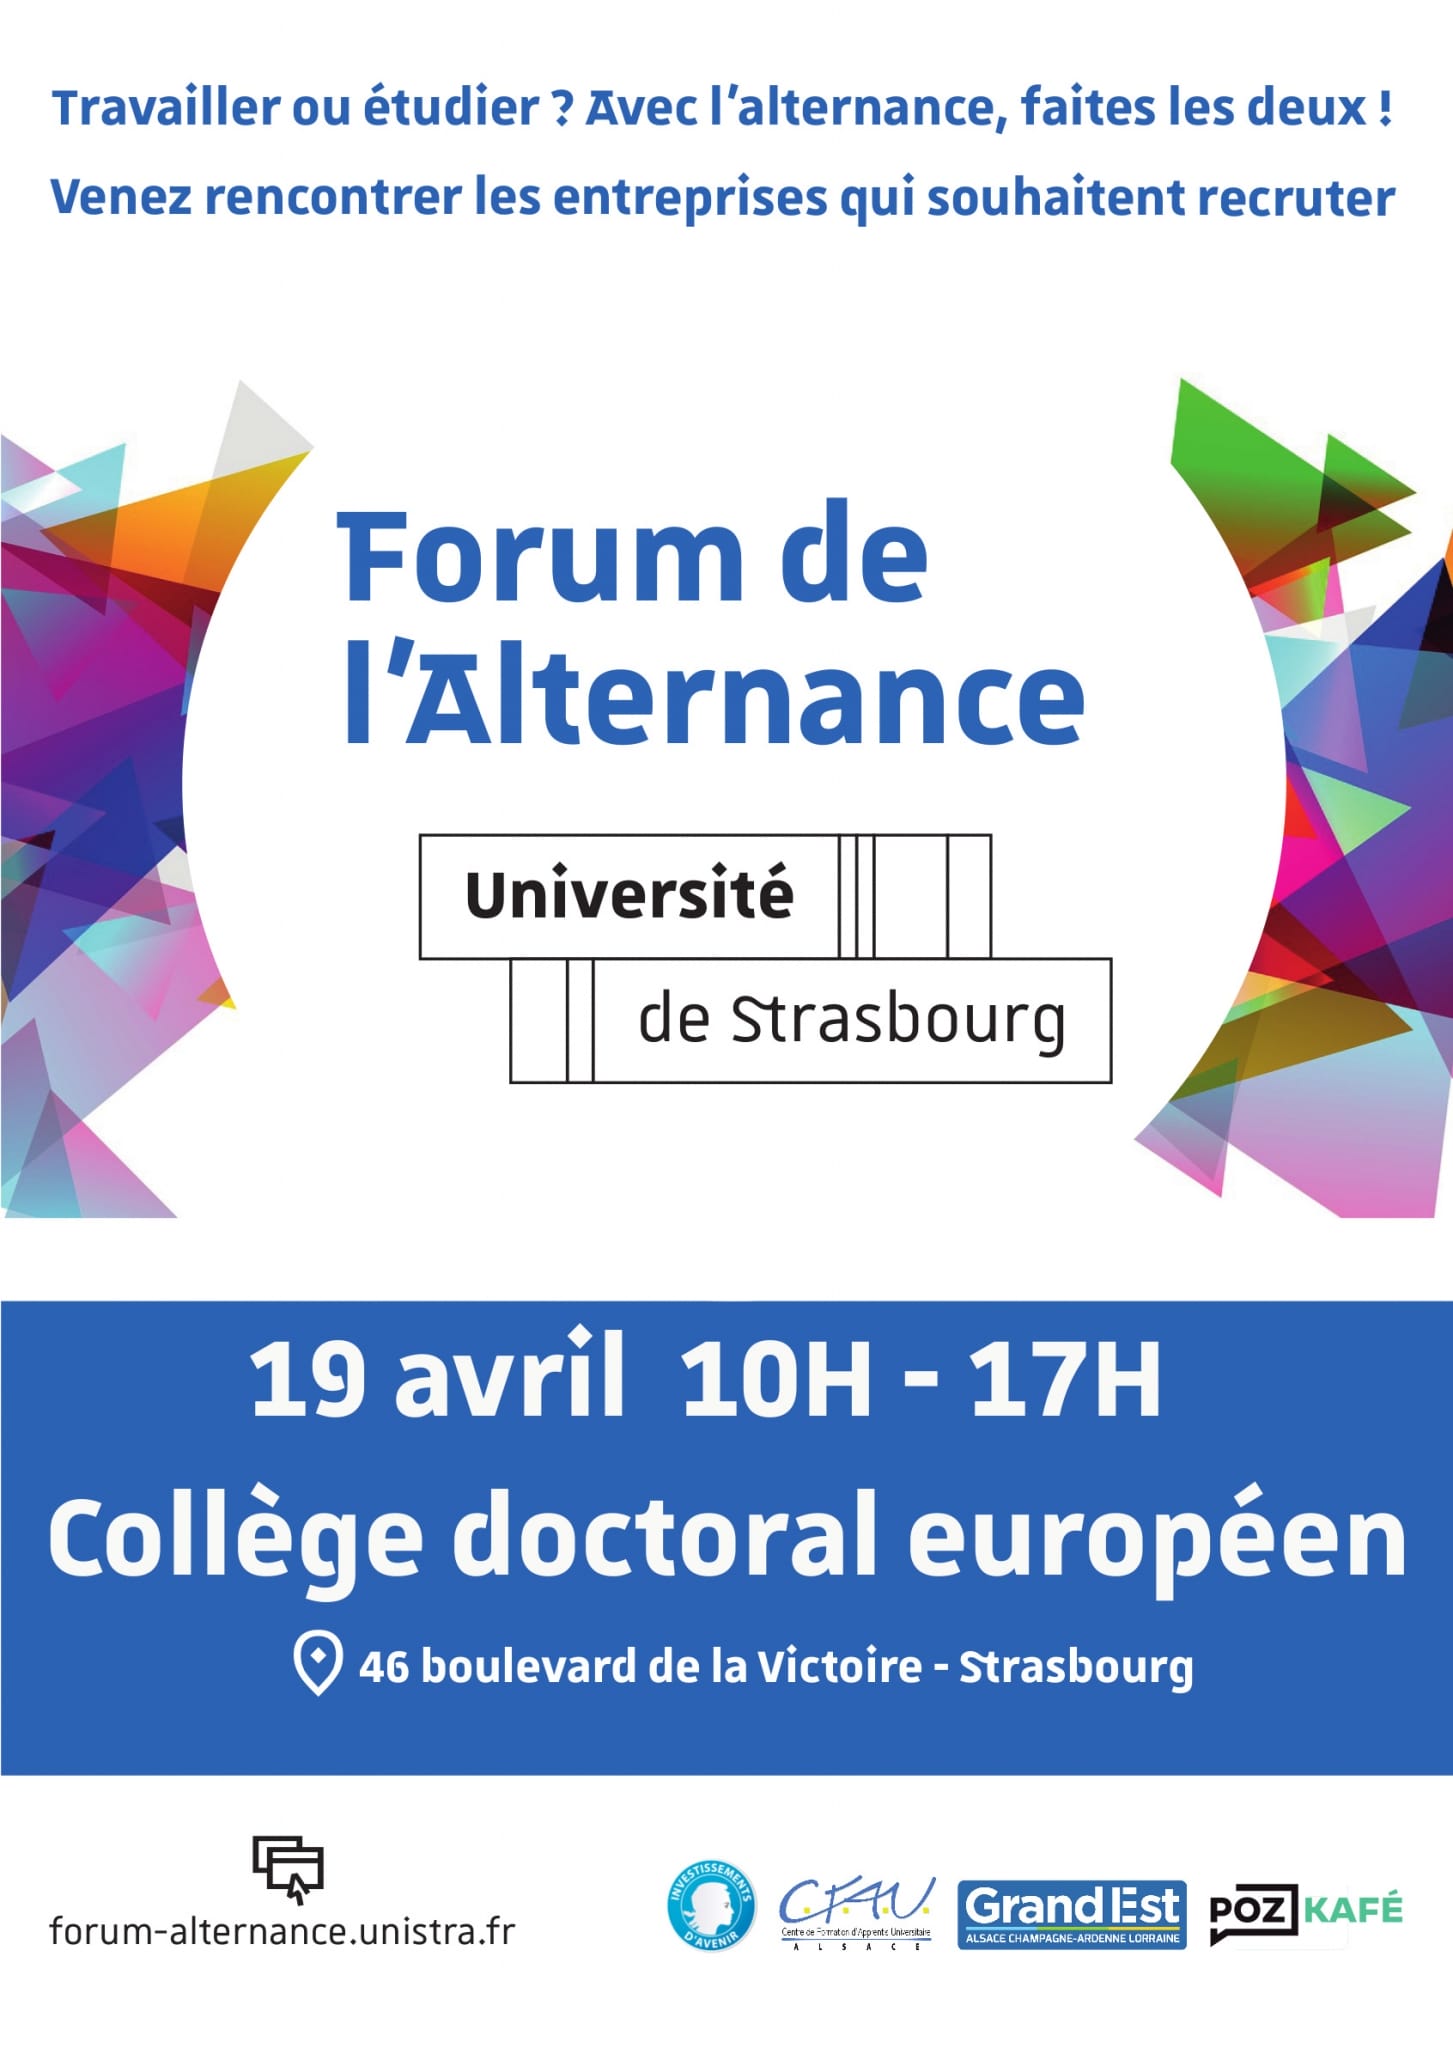 Forum de l’Alternance – 19 avril 2018 – Université de Strasbourg